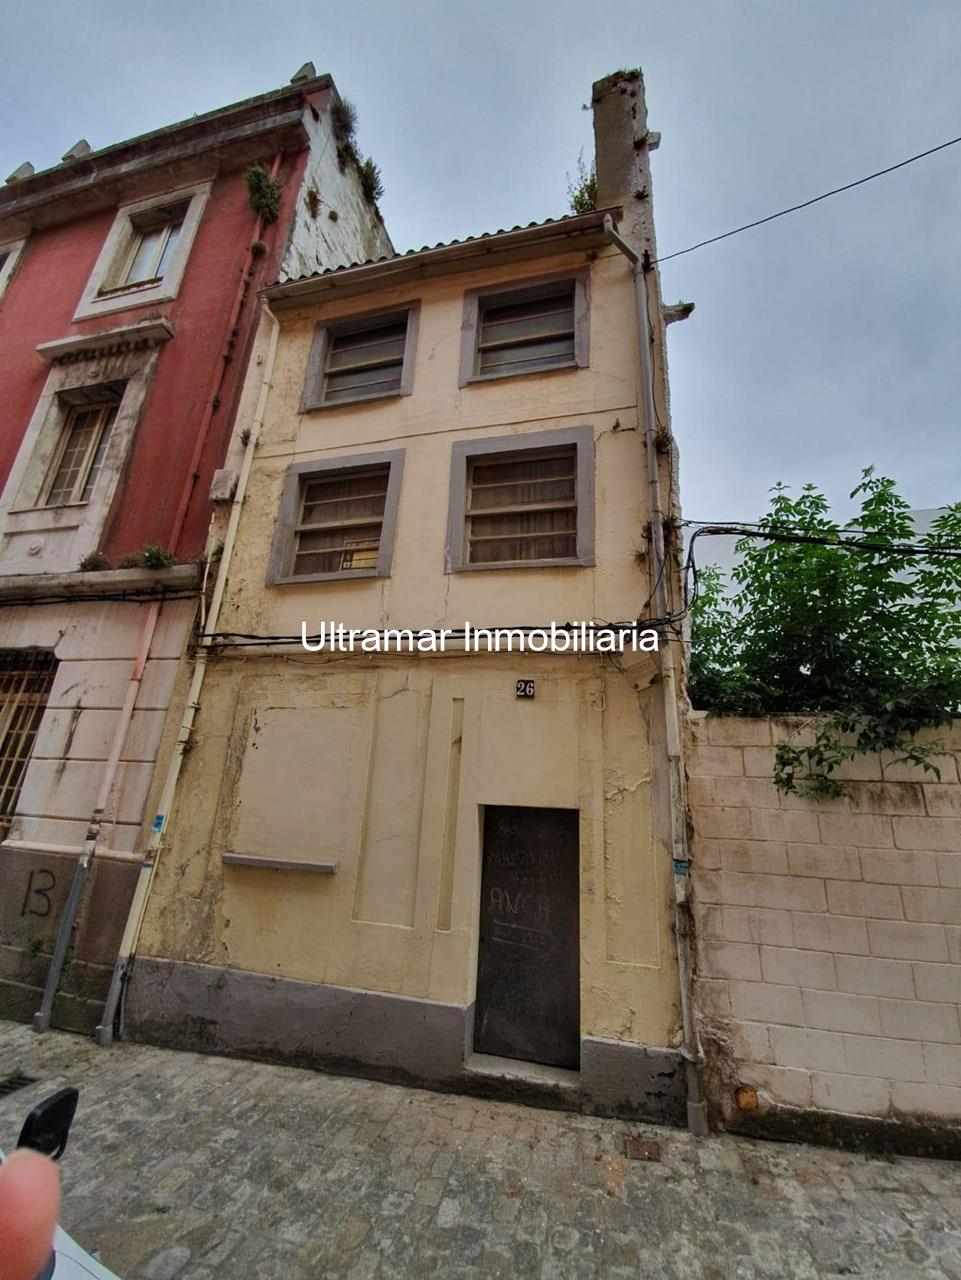 Foto 1 Edificio a restaurar en Ferrol Vello